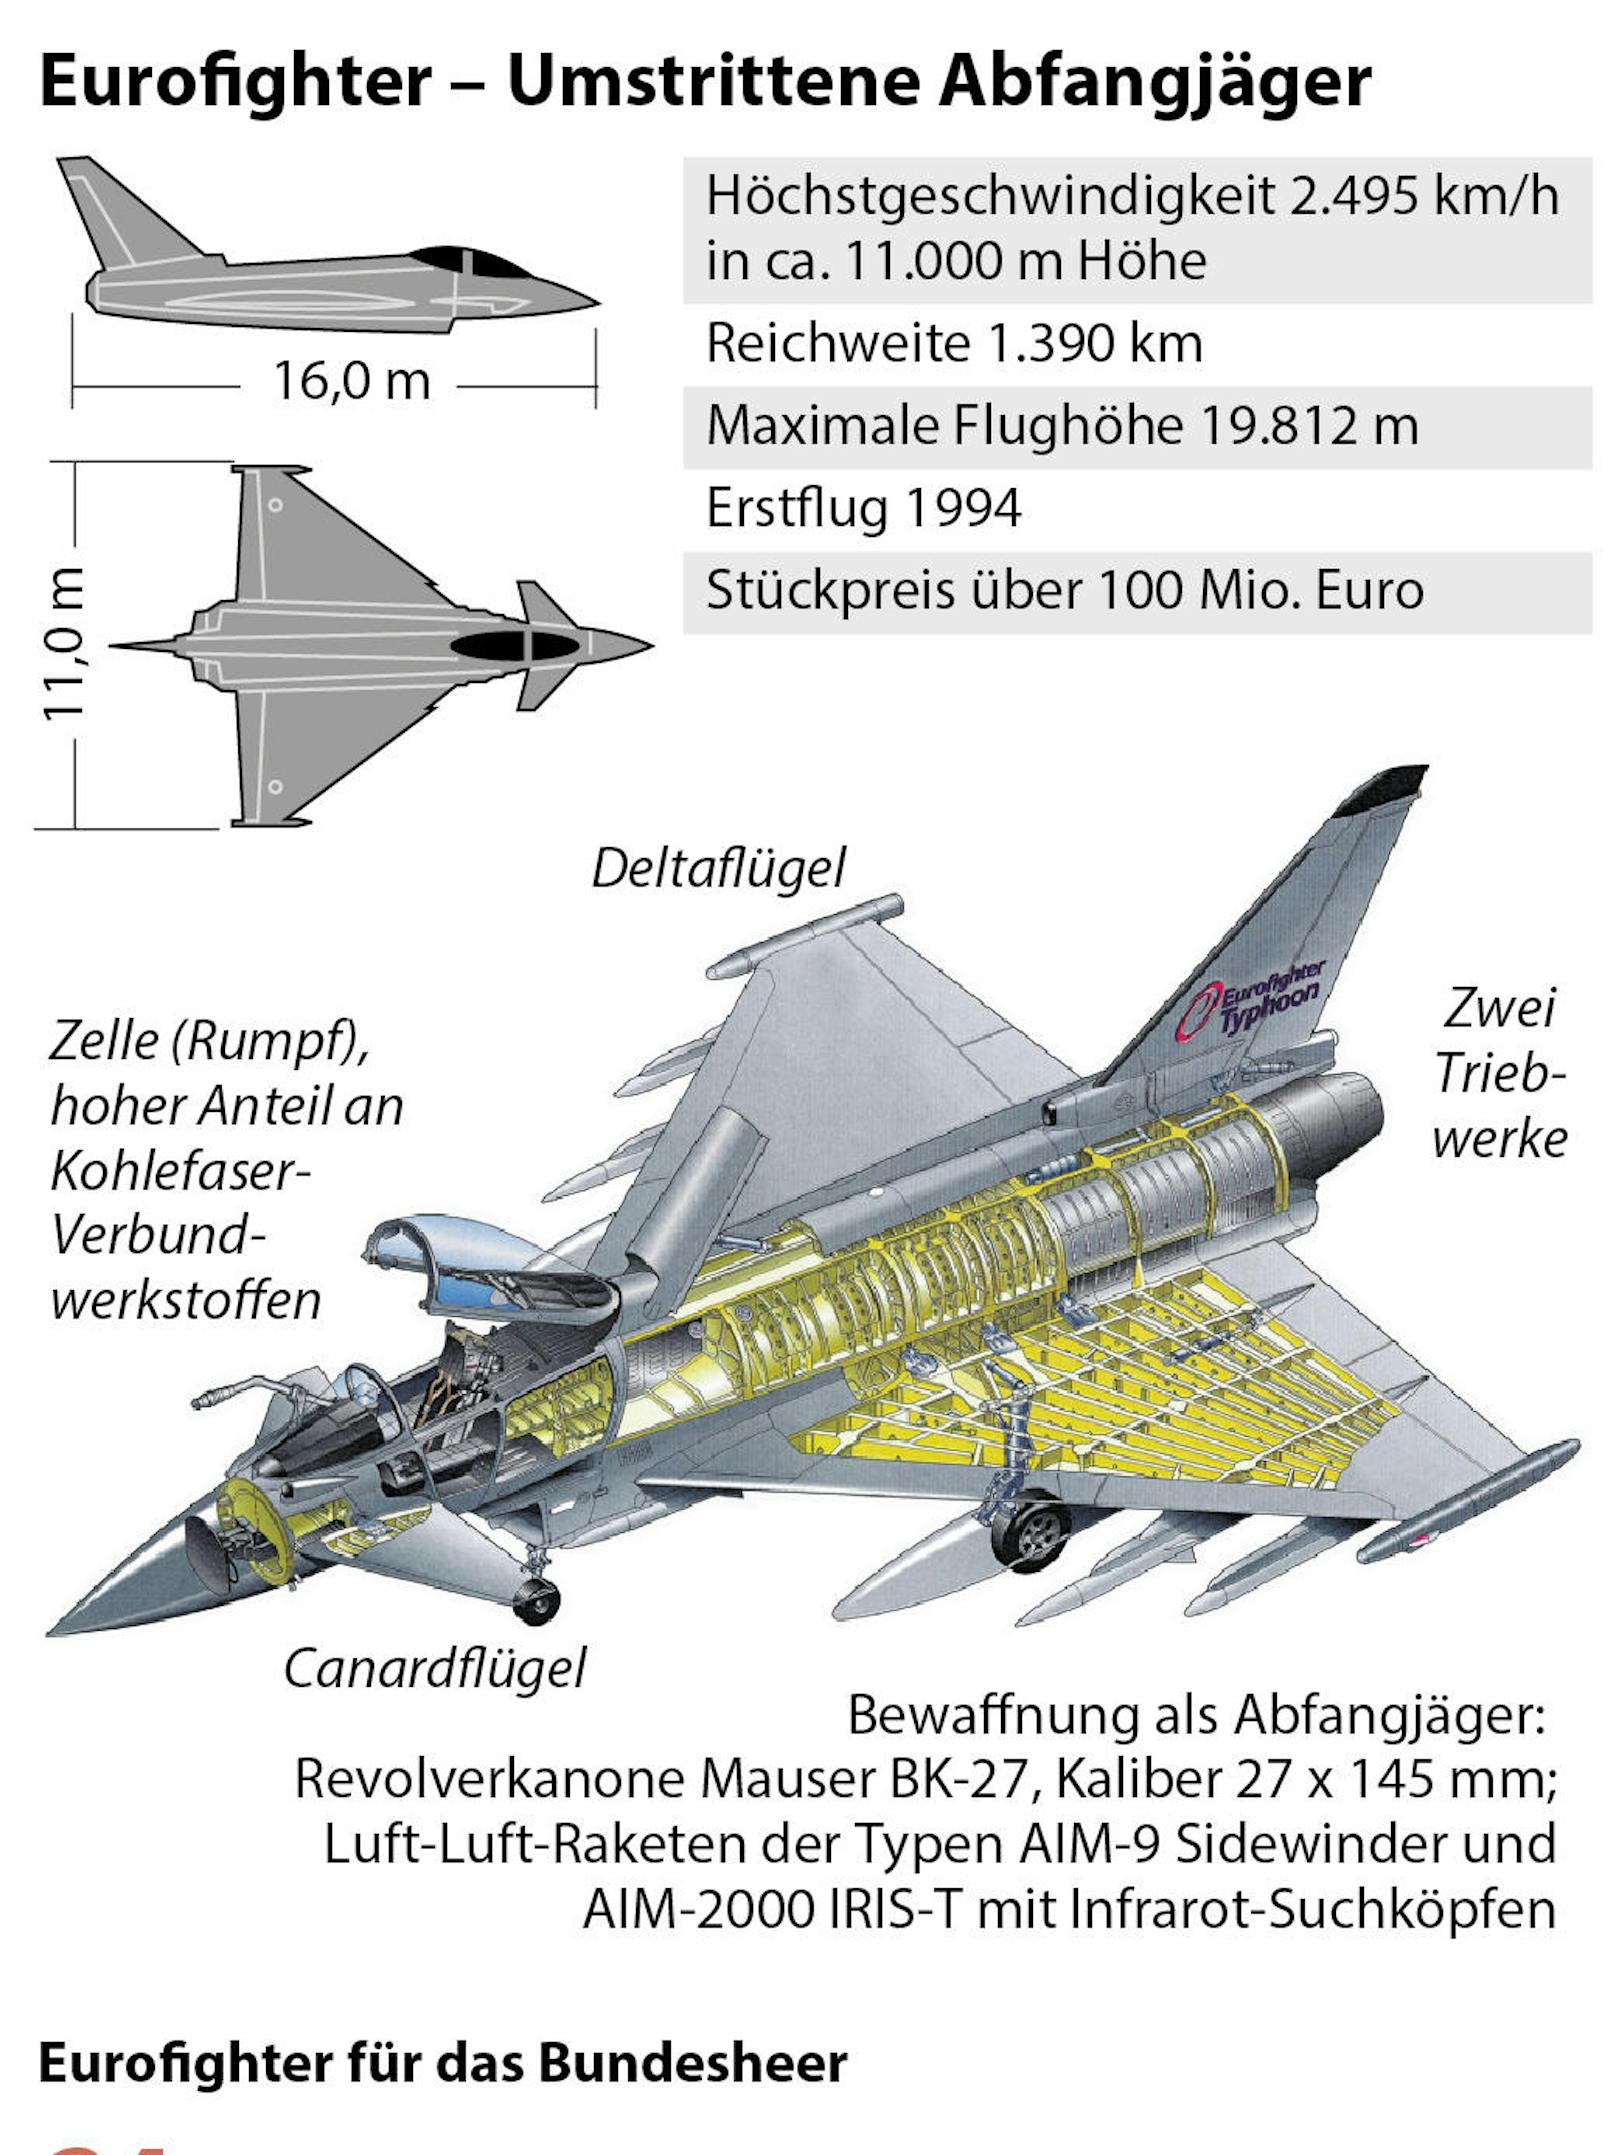 Auf dem allerneuesten Stand war die Technik des Eurofighters auch bei seiner Einführung in Österreich nicht. Das ist seiner langen Entwicklungszeit geschuldet. Bereits 1994 fand der Jungfernflug dieses Modells statt.